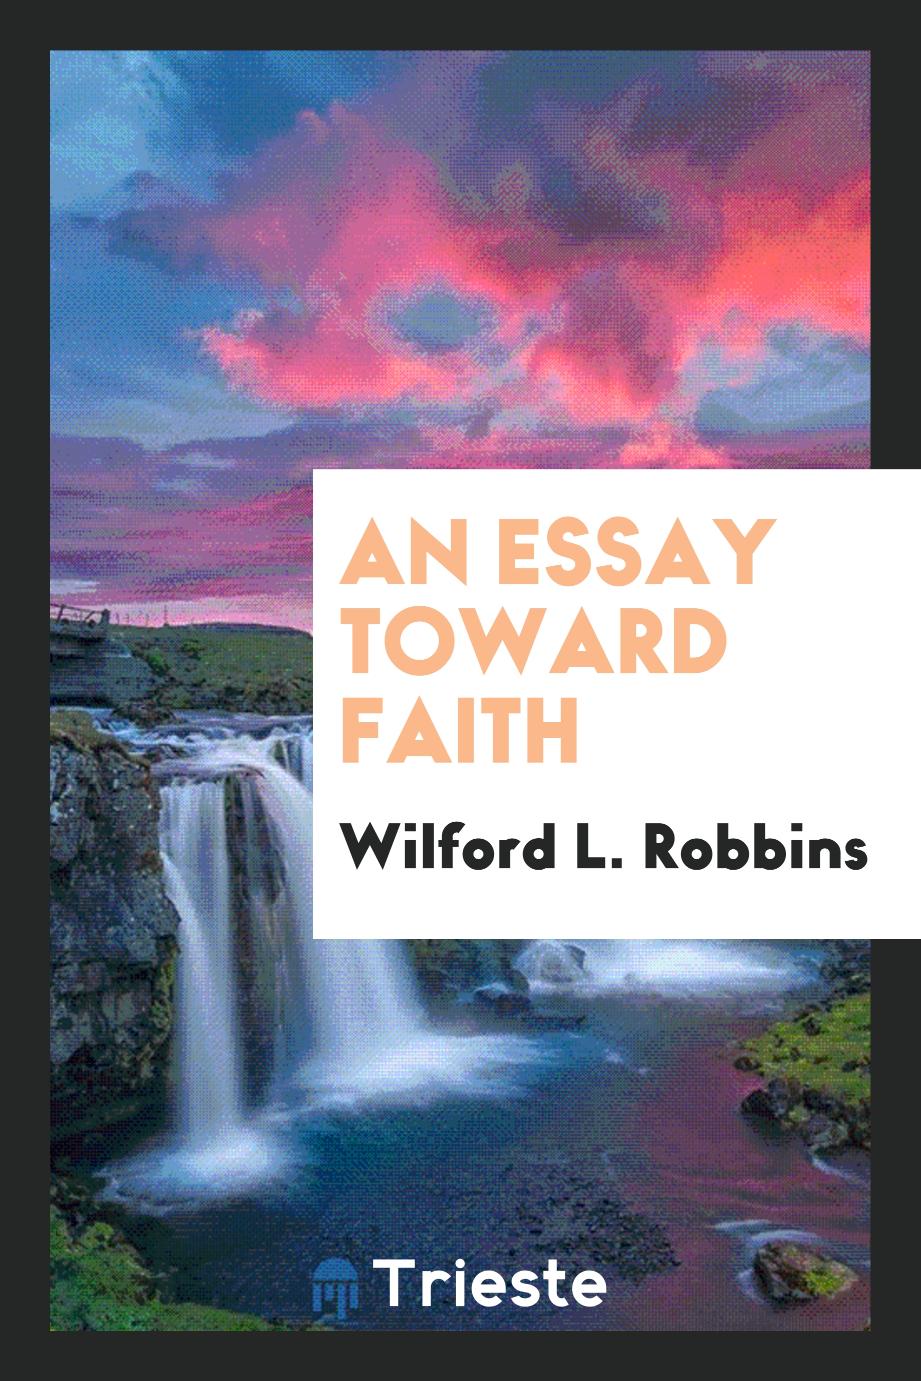 An essay toward faith